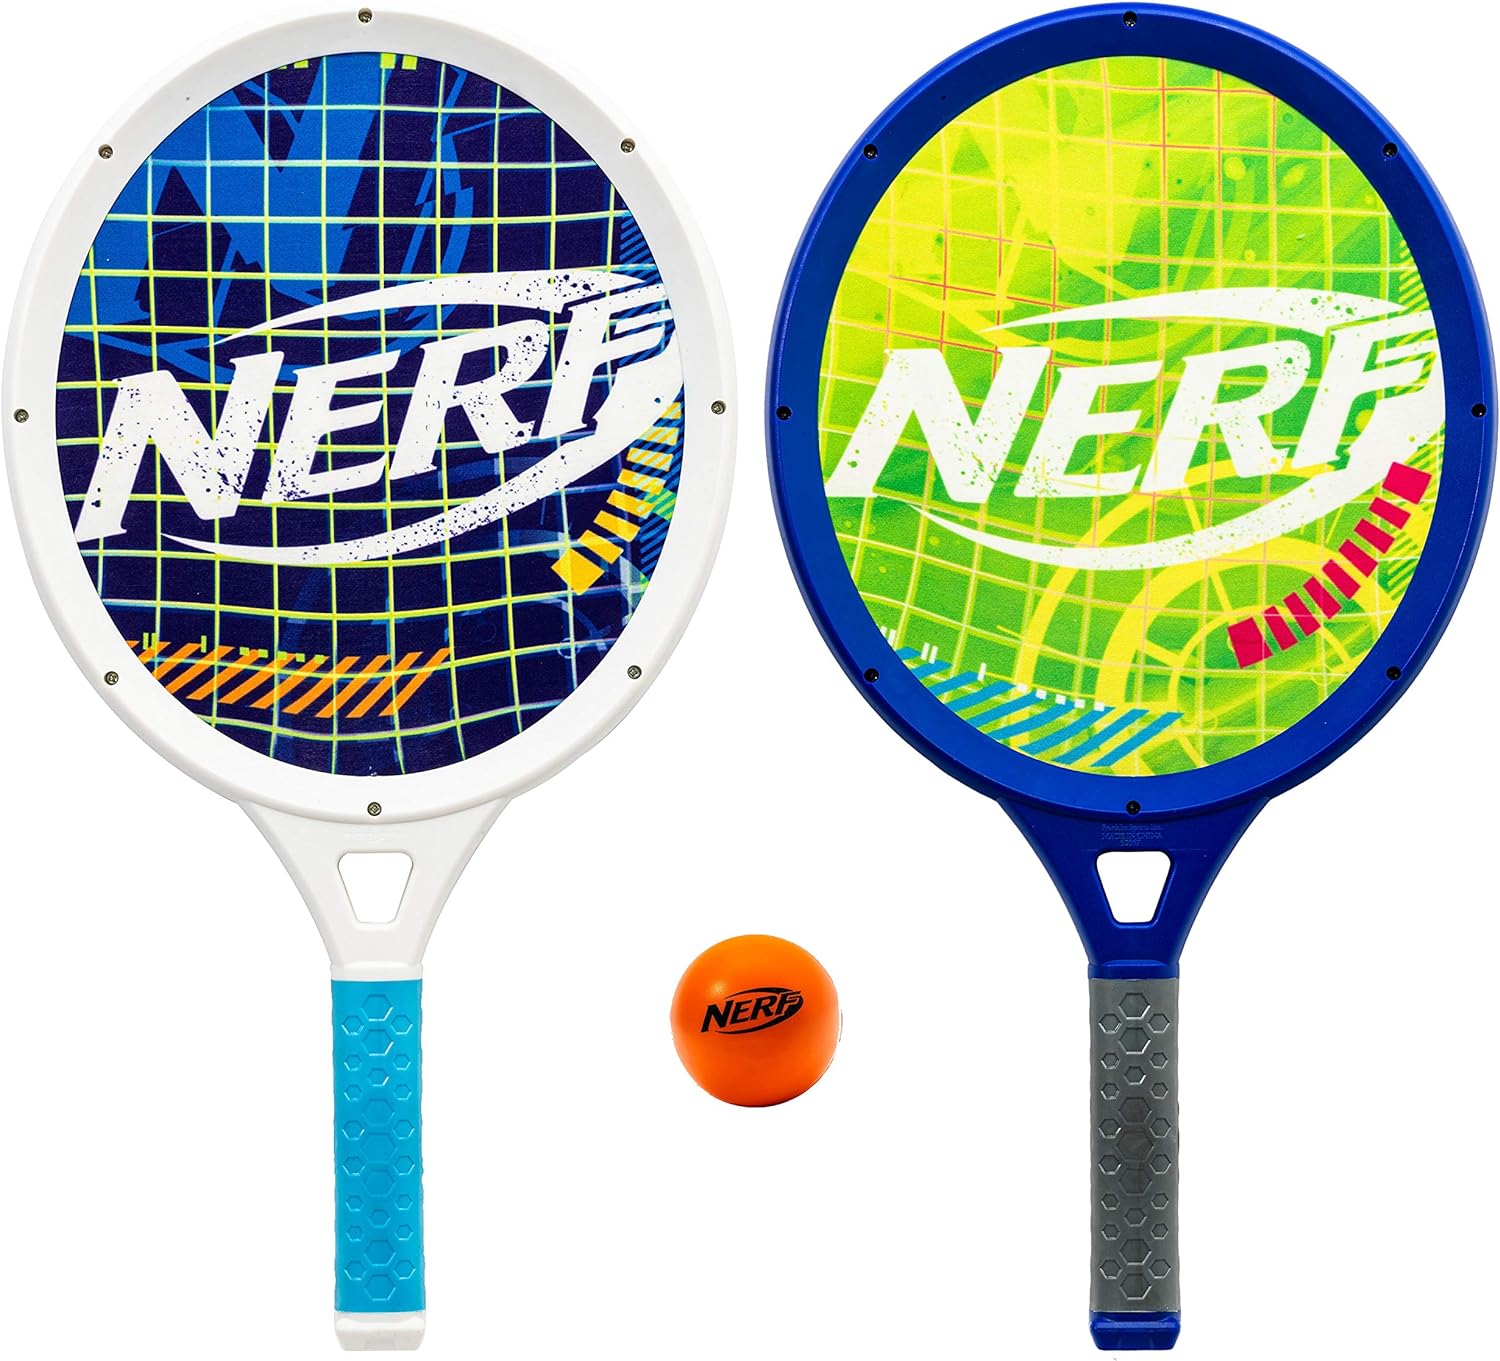 NERF Foam Tennis Set for Kids - 2 Player Kids Tennis Set - Jumbo Rackets and Foam Tennis Ball - Indoor Tennis Set - (2) Rackets and Foam Ball Included